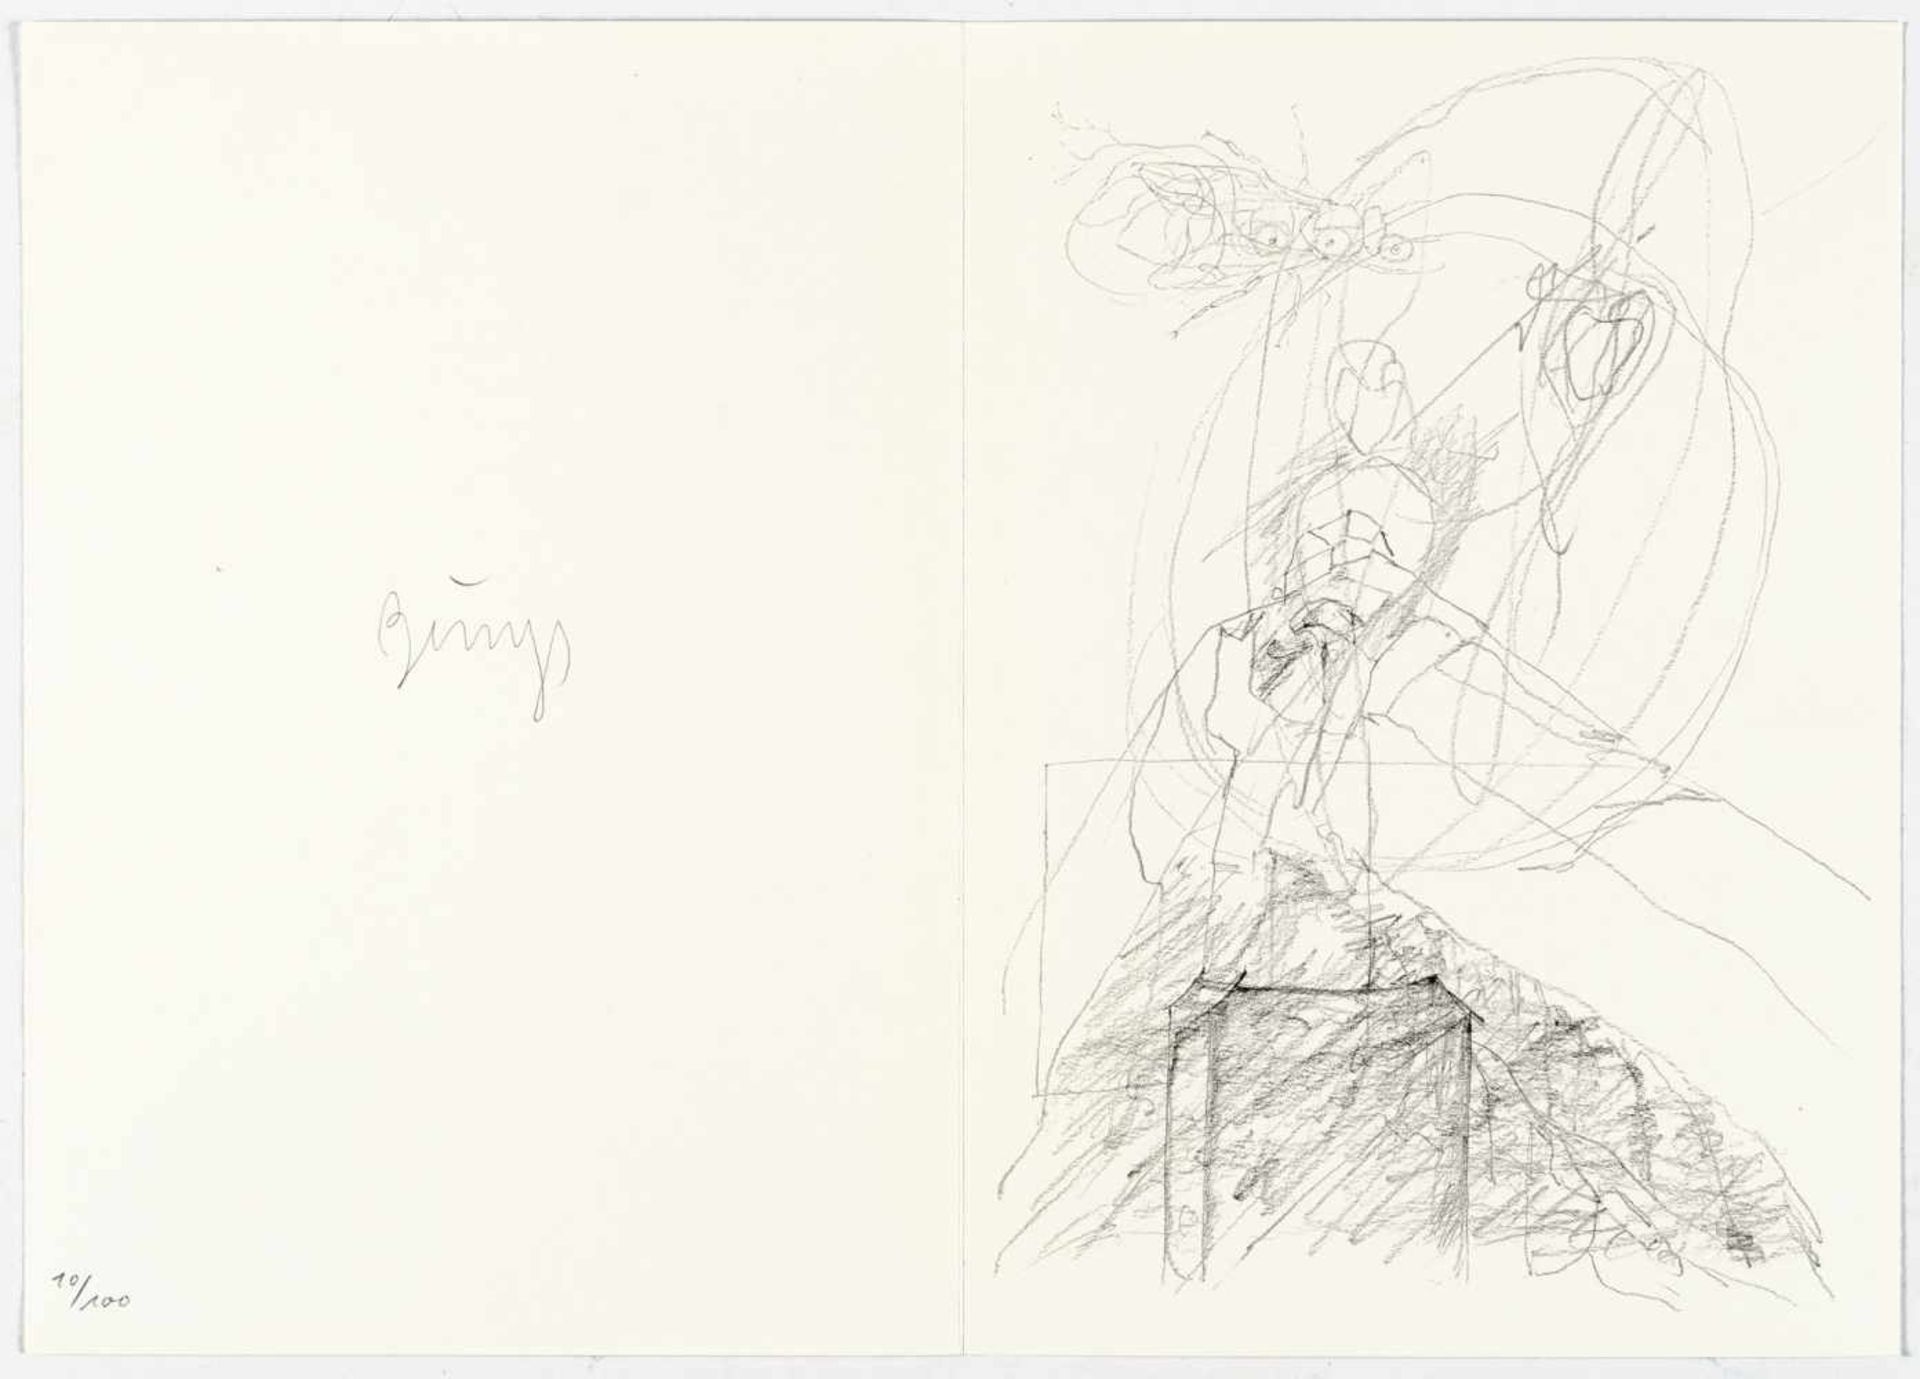 Joseph BeuysZeichnungen zu Leonardos Codices MadridBuch mit 81 Granolithographien. (1975). - Bild 2 aus 5